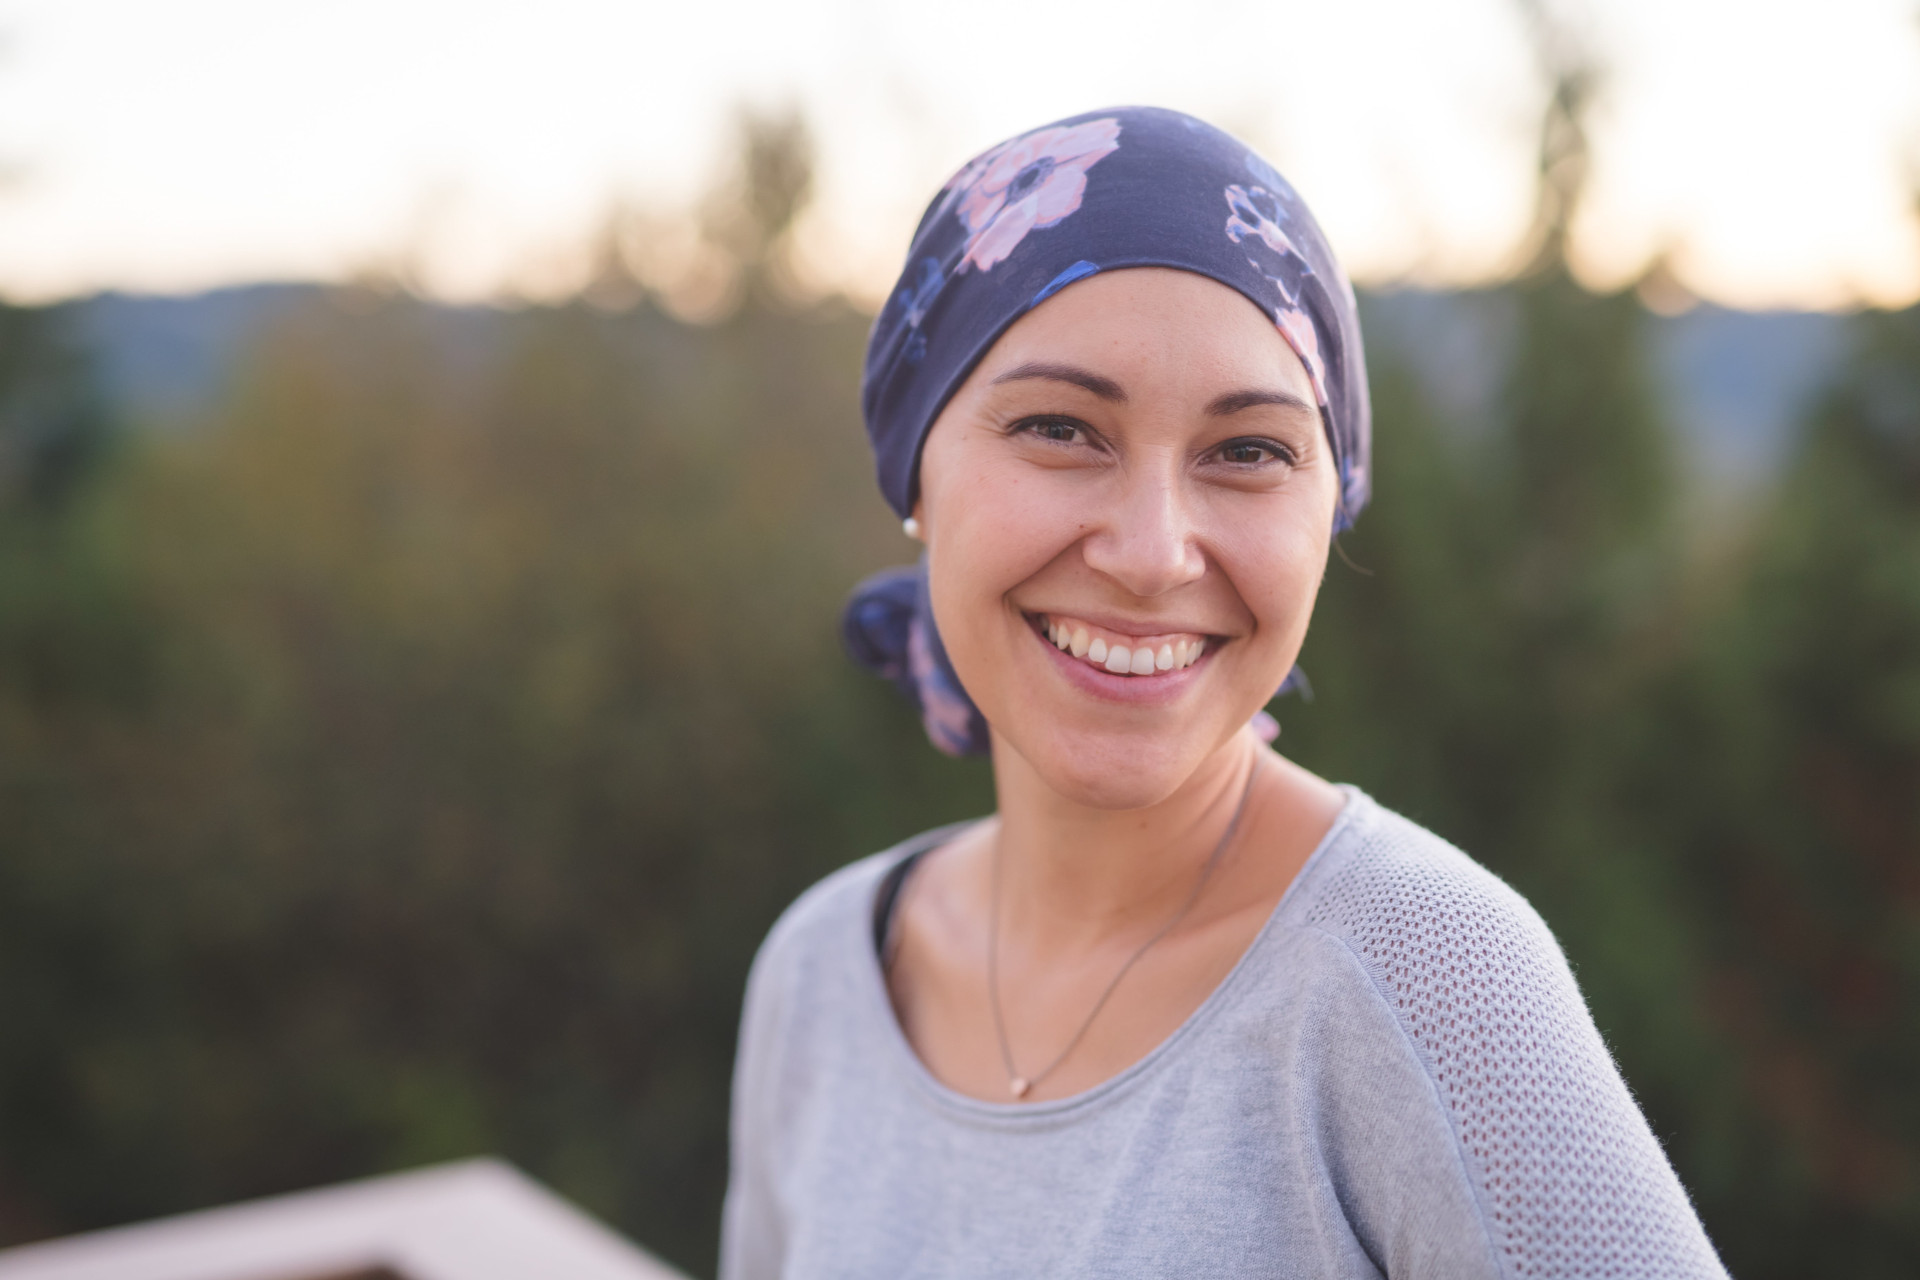 Une femme atteinte d'un cancer avec un bandana sur la tête regardant l'objectif en souriant - soutien maladies graves